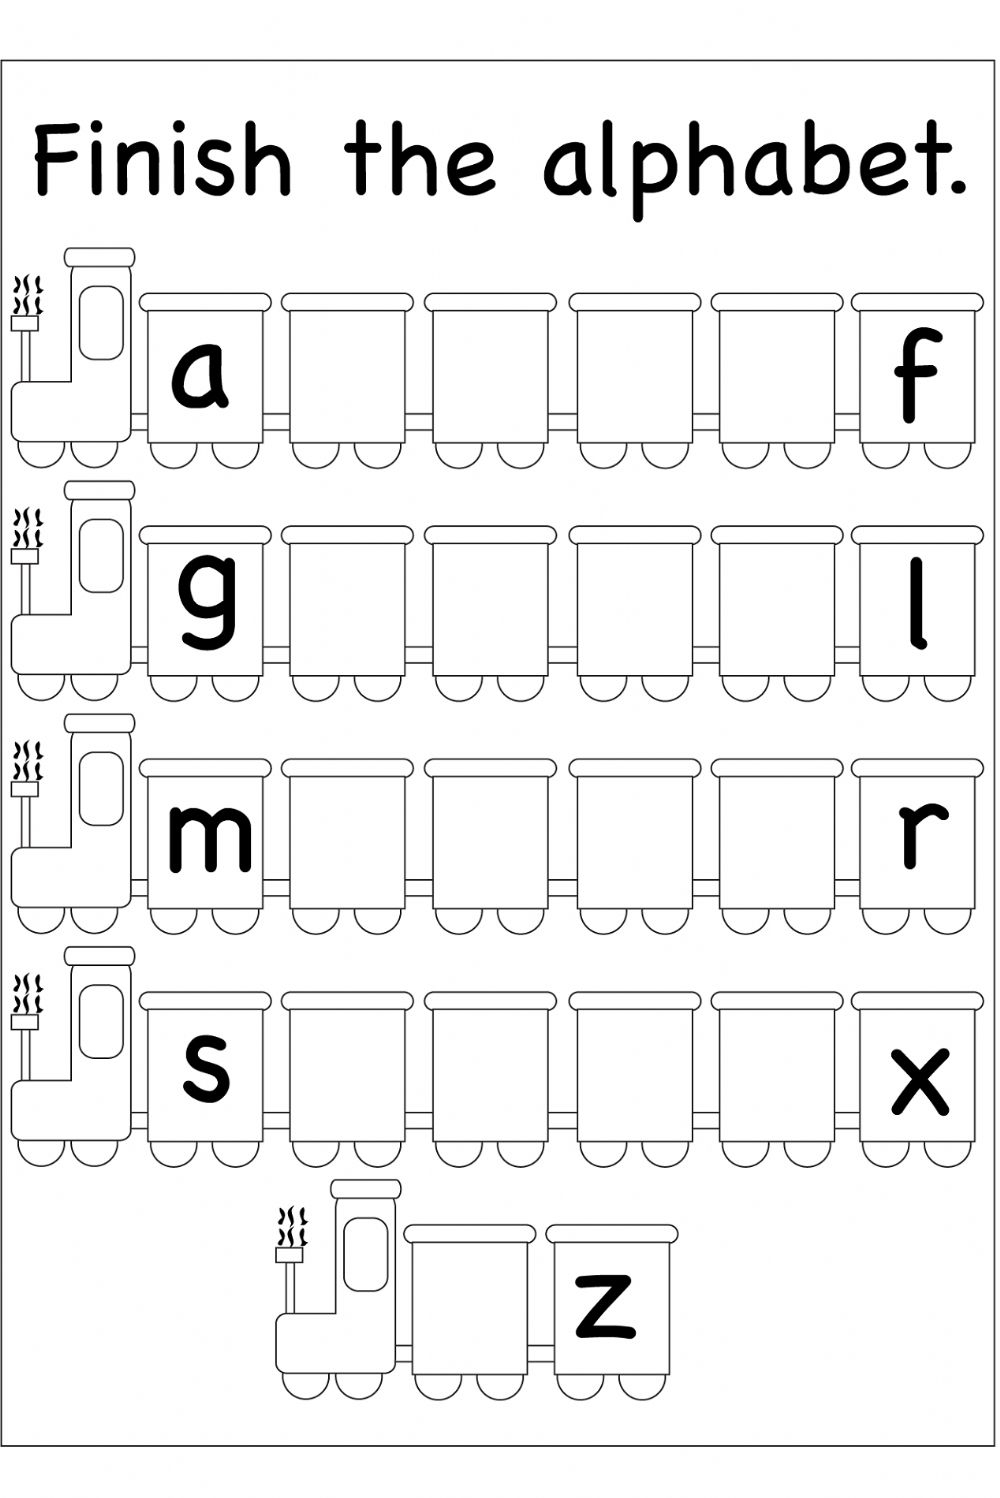 English Alphabet - Interactive Worksheet intended for Alphabet Worksheets Pdf Esl